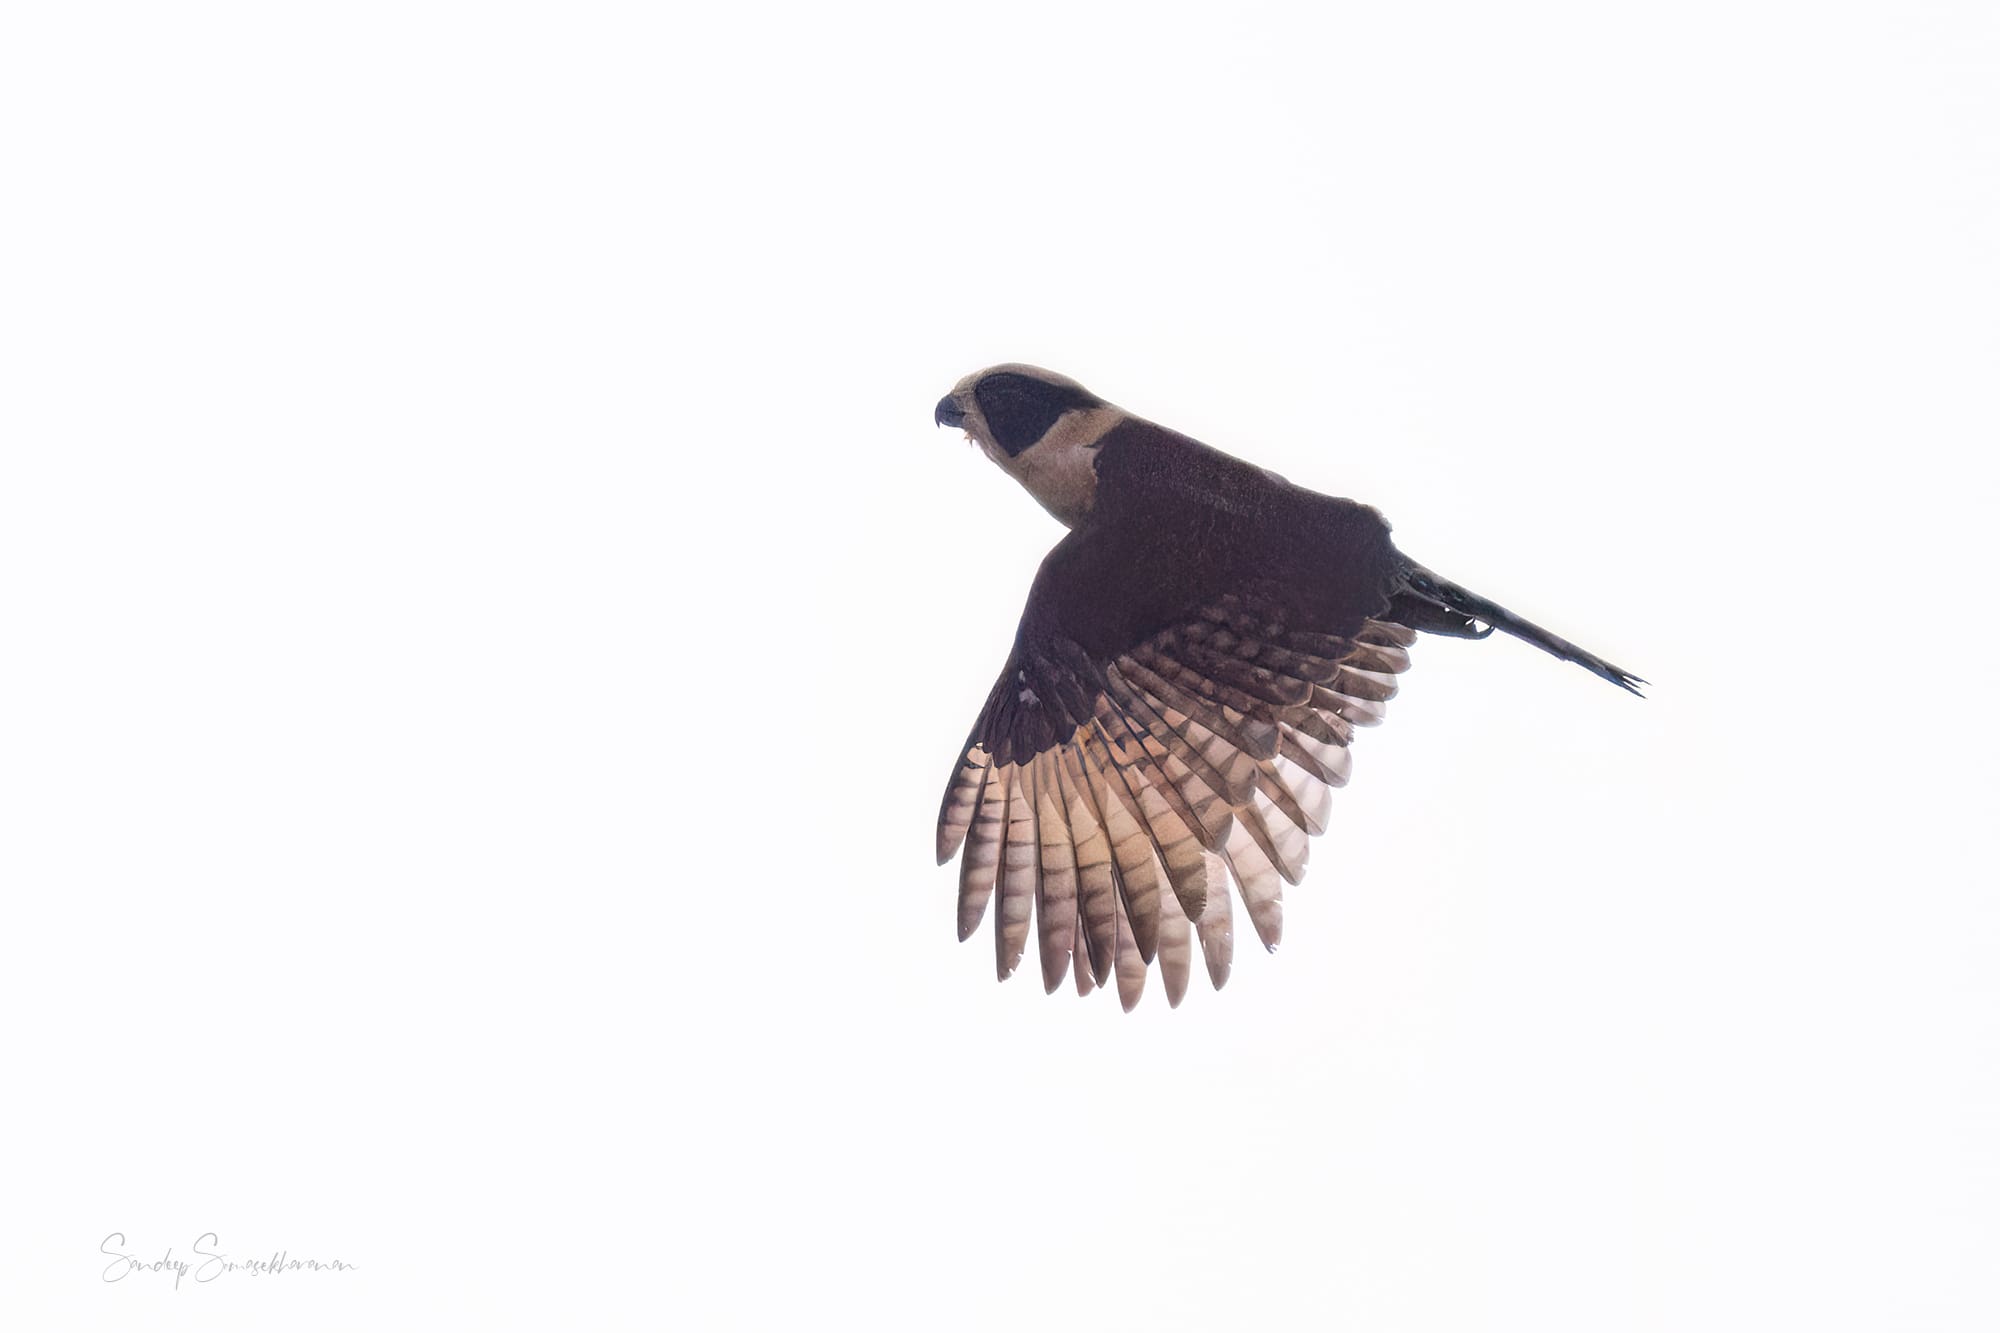 Laughing Falcon at Boca Tapada, Costa Rica birding diary | The Green Ogre